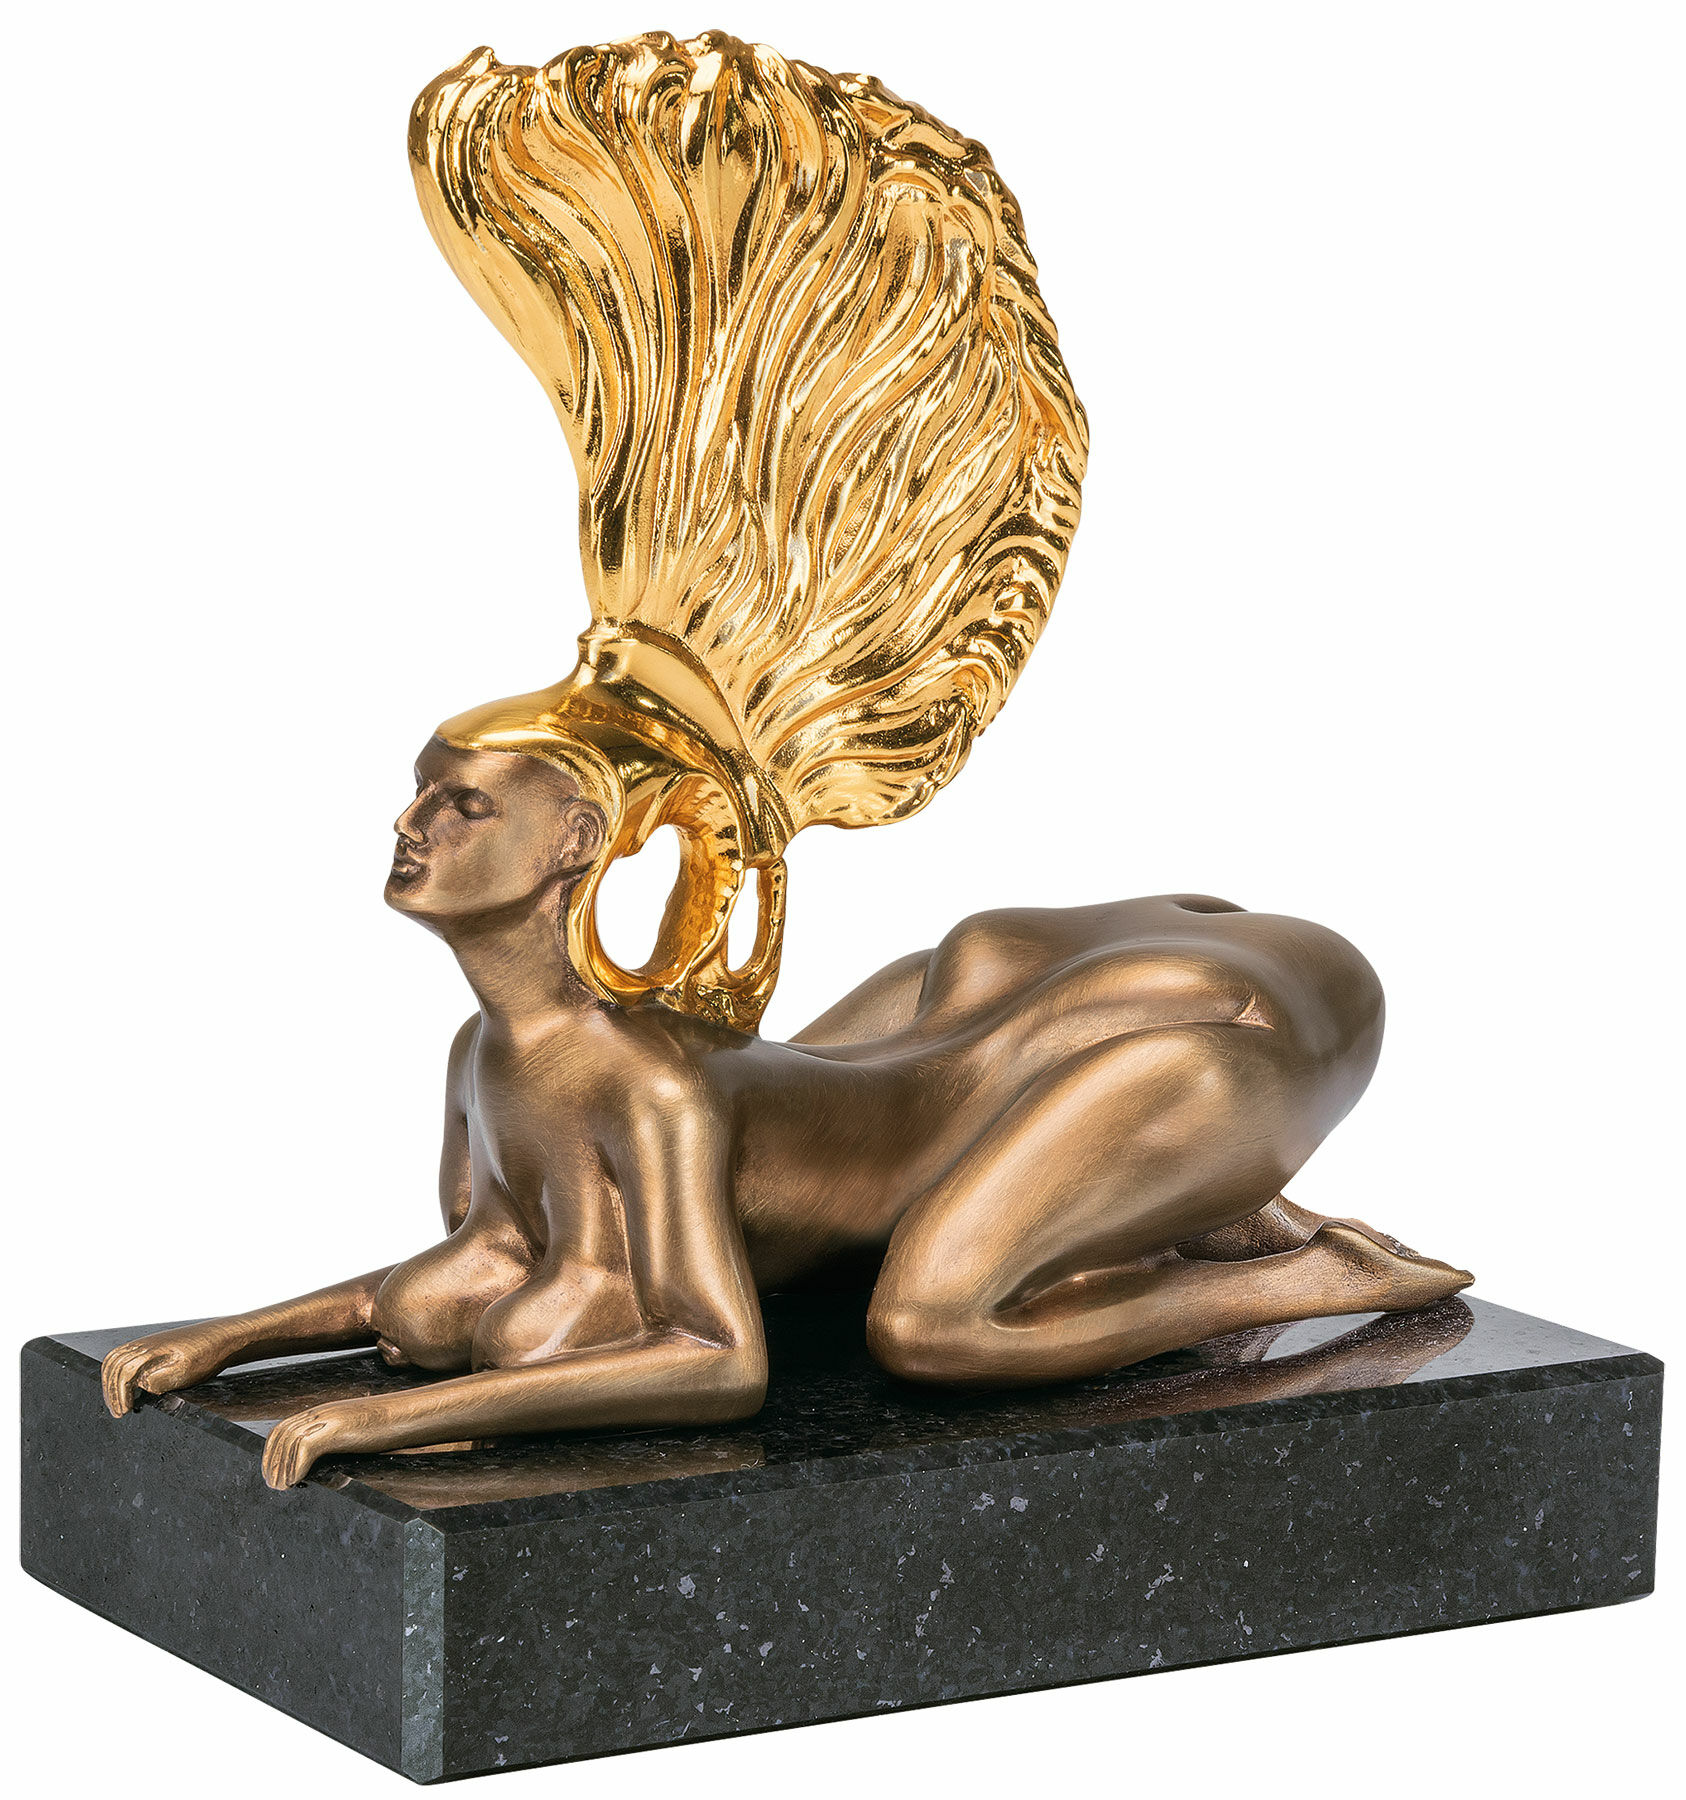 Skulptur "Sfinksen med den gyldne hjelm - Miniaturen", bronze delvist forgyldt von Ernst Fuchs